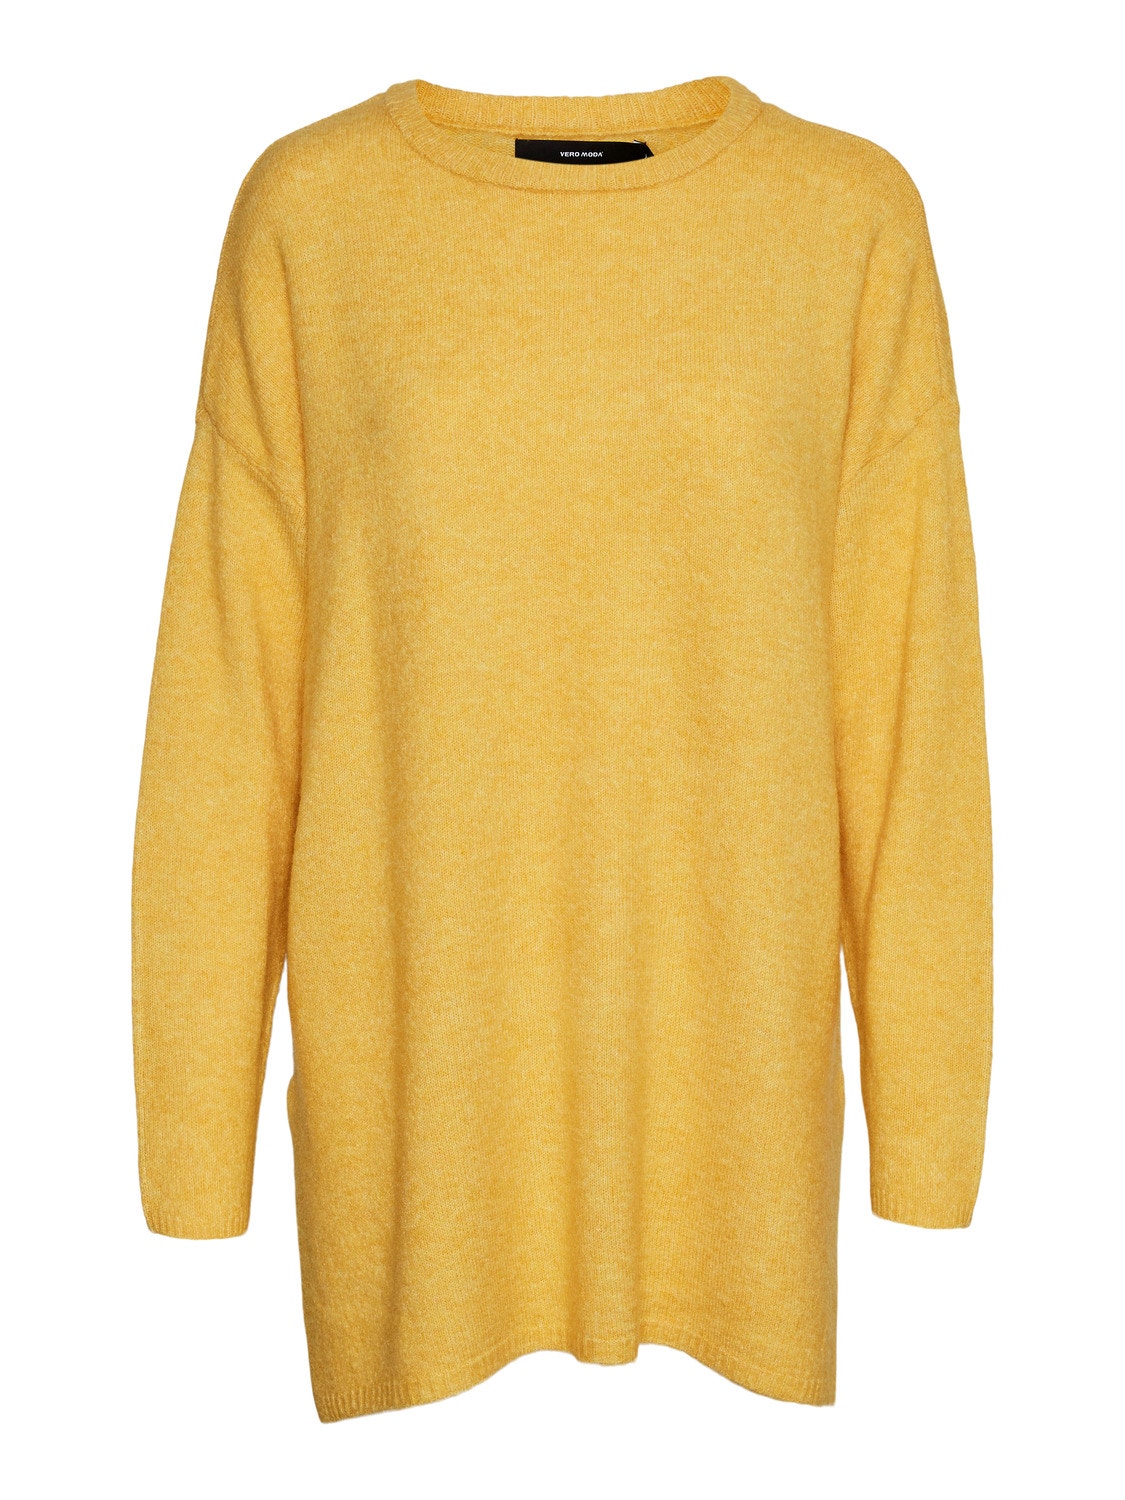 Vero Moda VMPLAZA Pullover -Spicy Mustard - 10268141